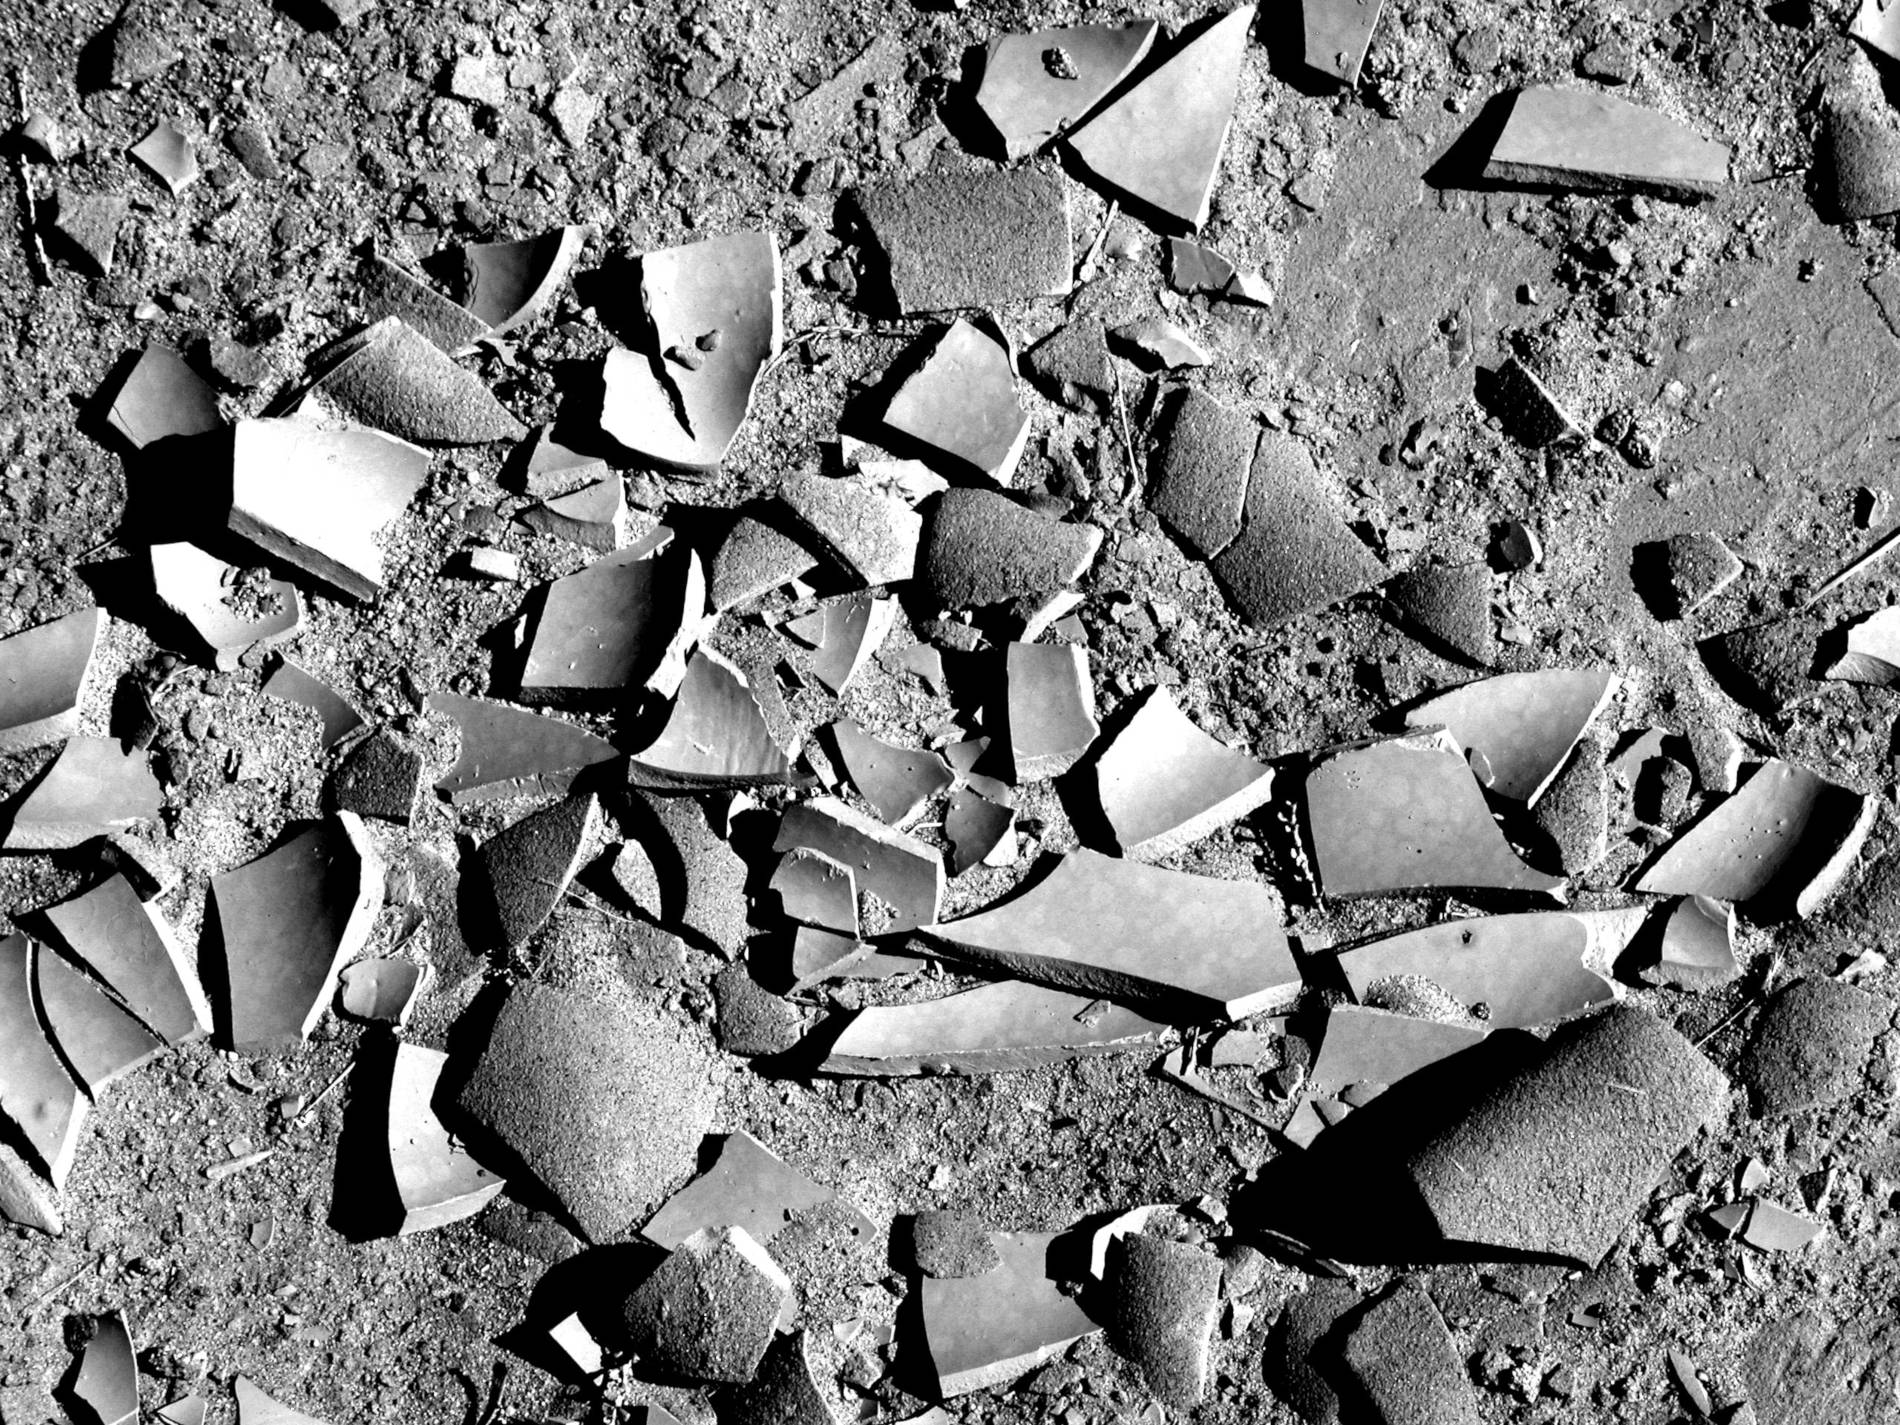 Fotografia em preto e branco de um chão de areia com um utensílio de cerâmica quebrado em várias partes.